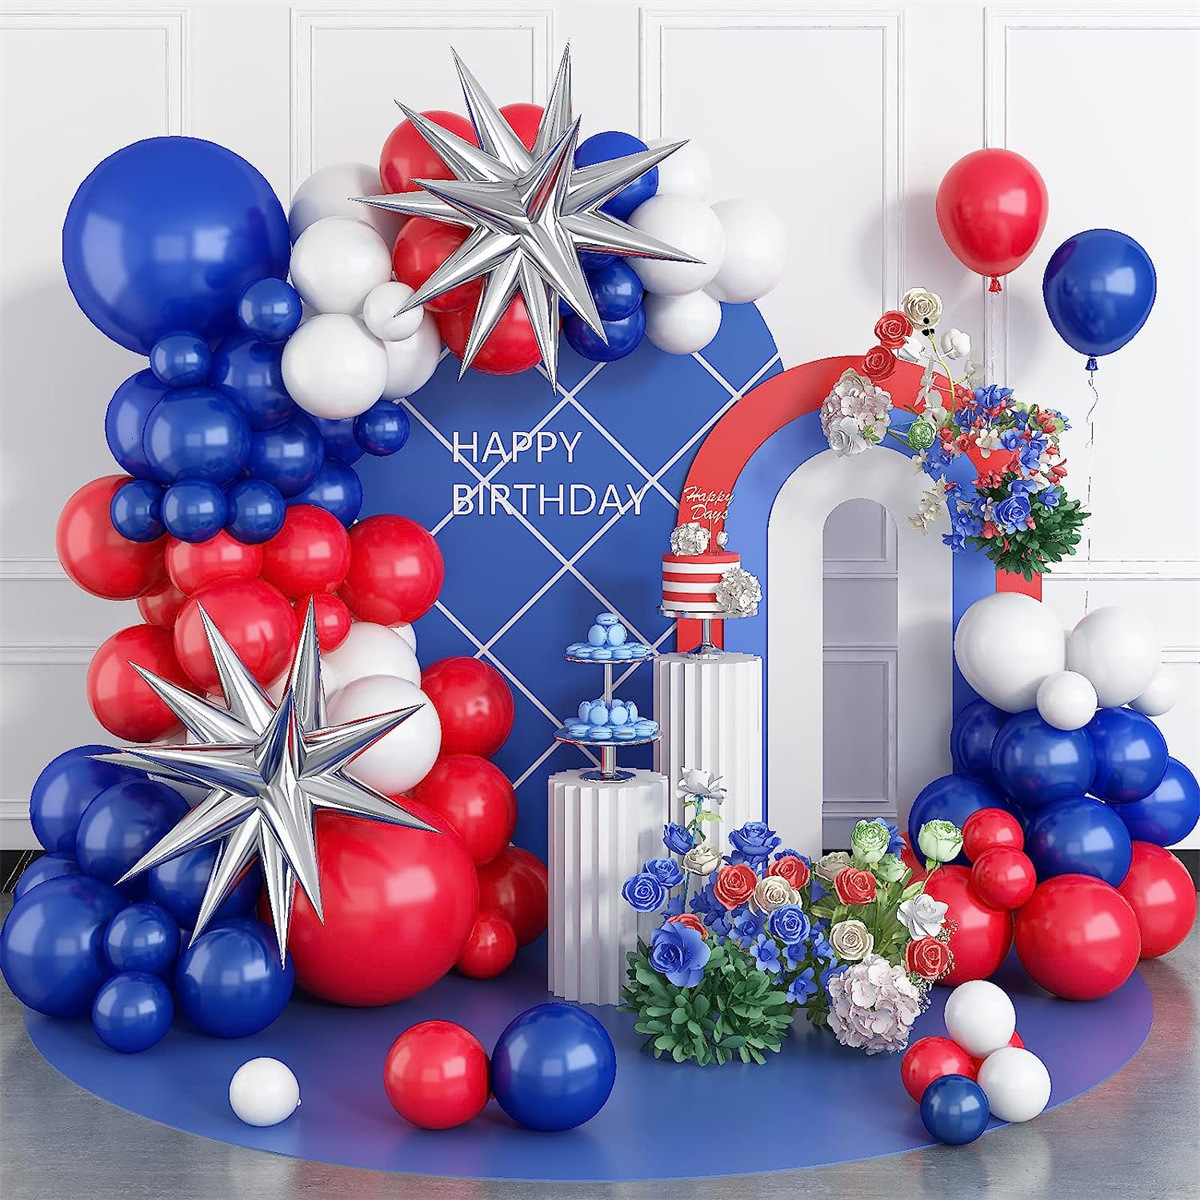 Ballon Rond - Joyeux Anniversaire Bleu Marine avec étoiles et confettis